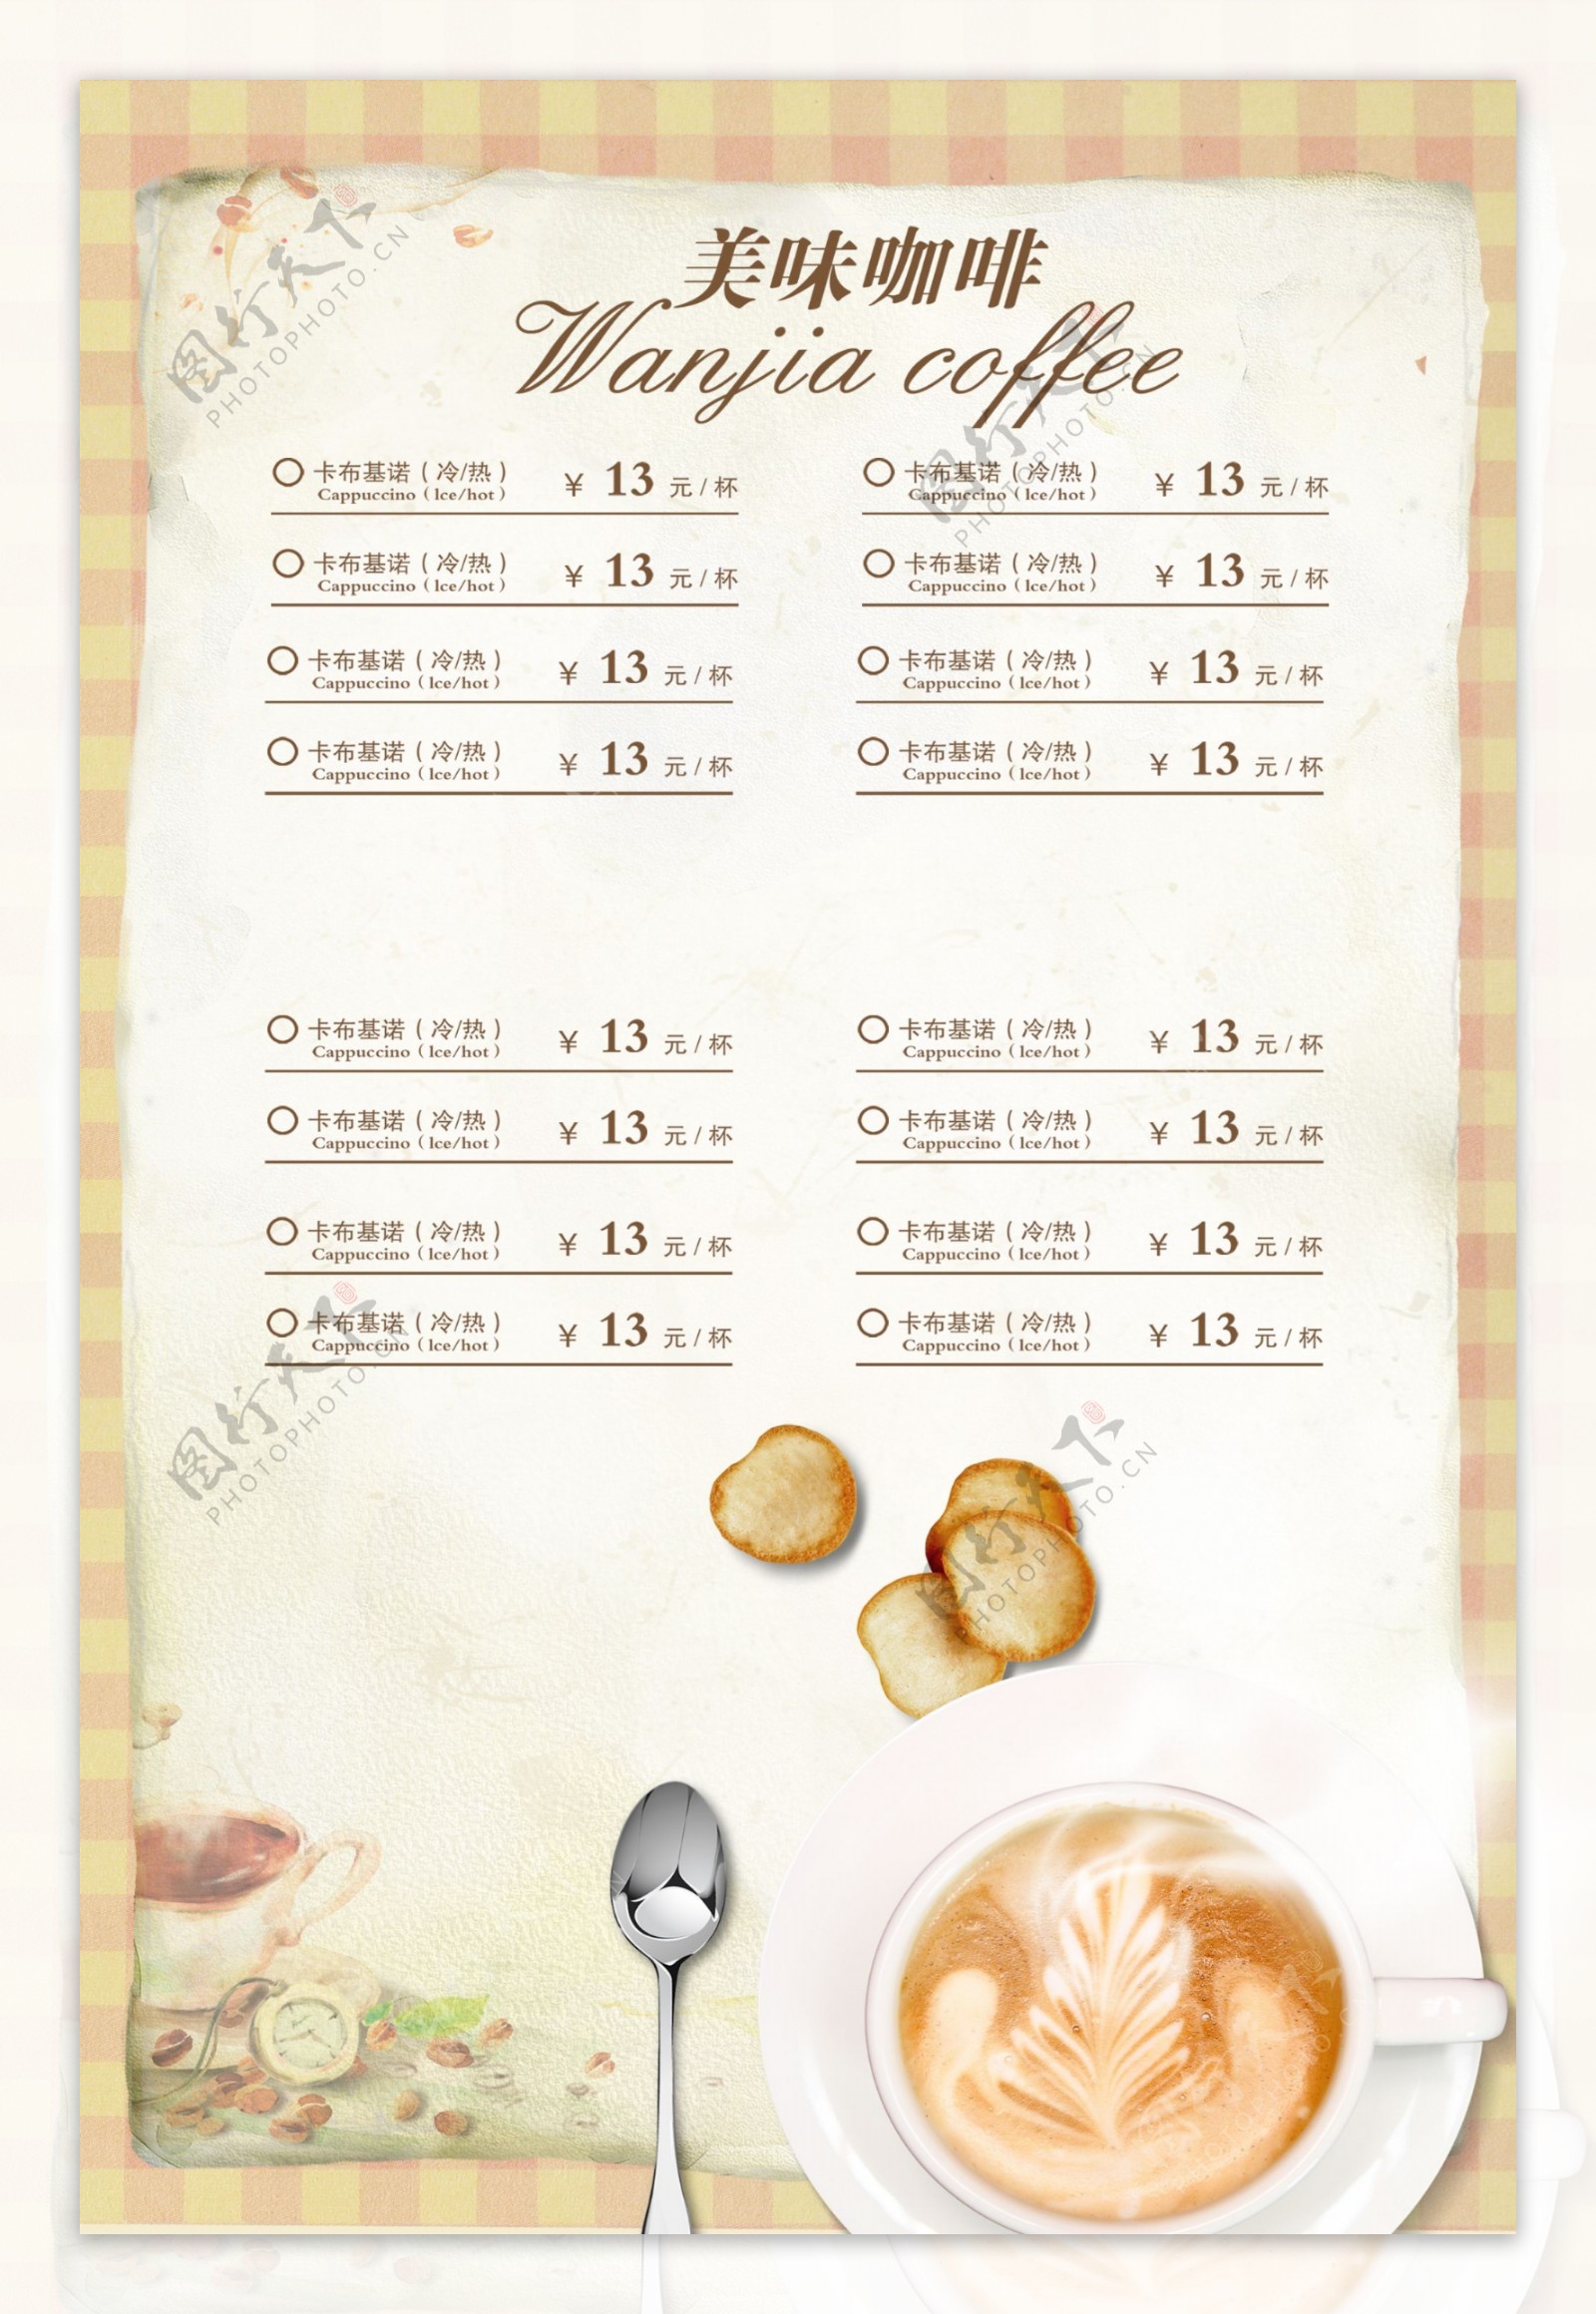 咖啡吧菜单模板设计